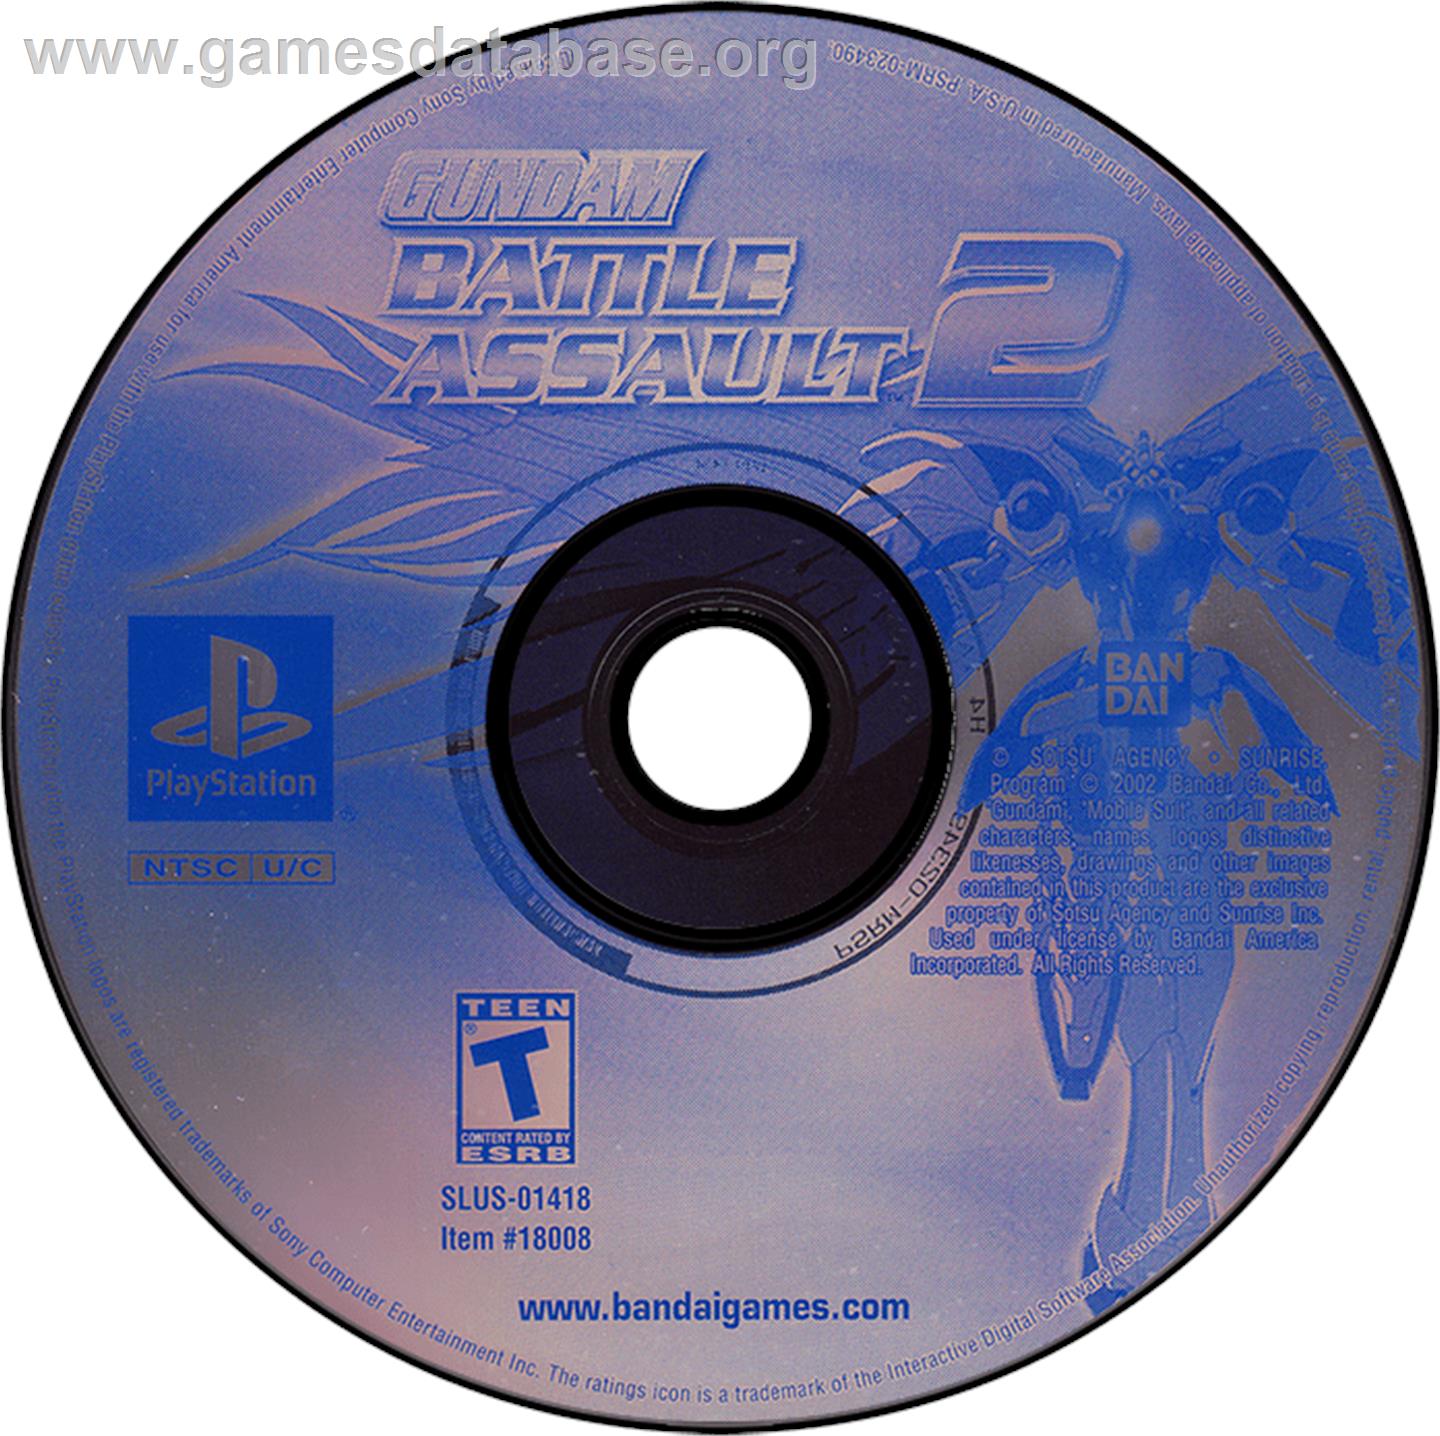 Gundam Battle Assault 2 - Sony Playstation - Artwork - Disc